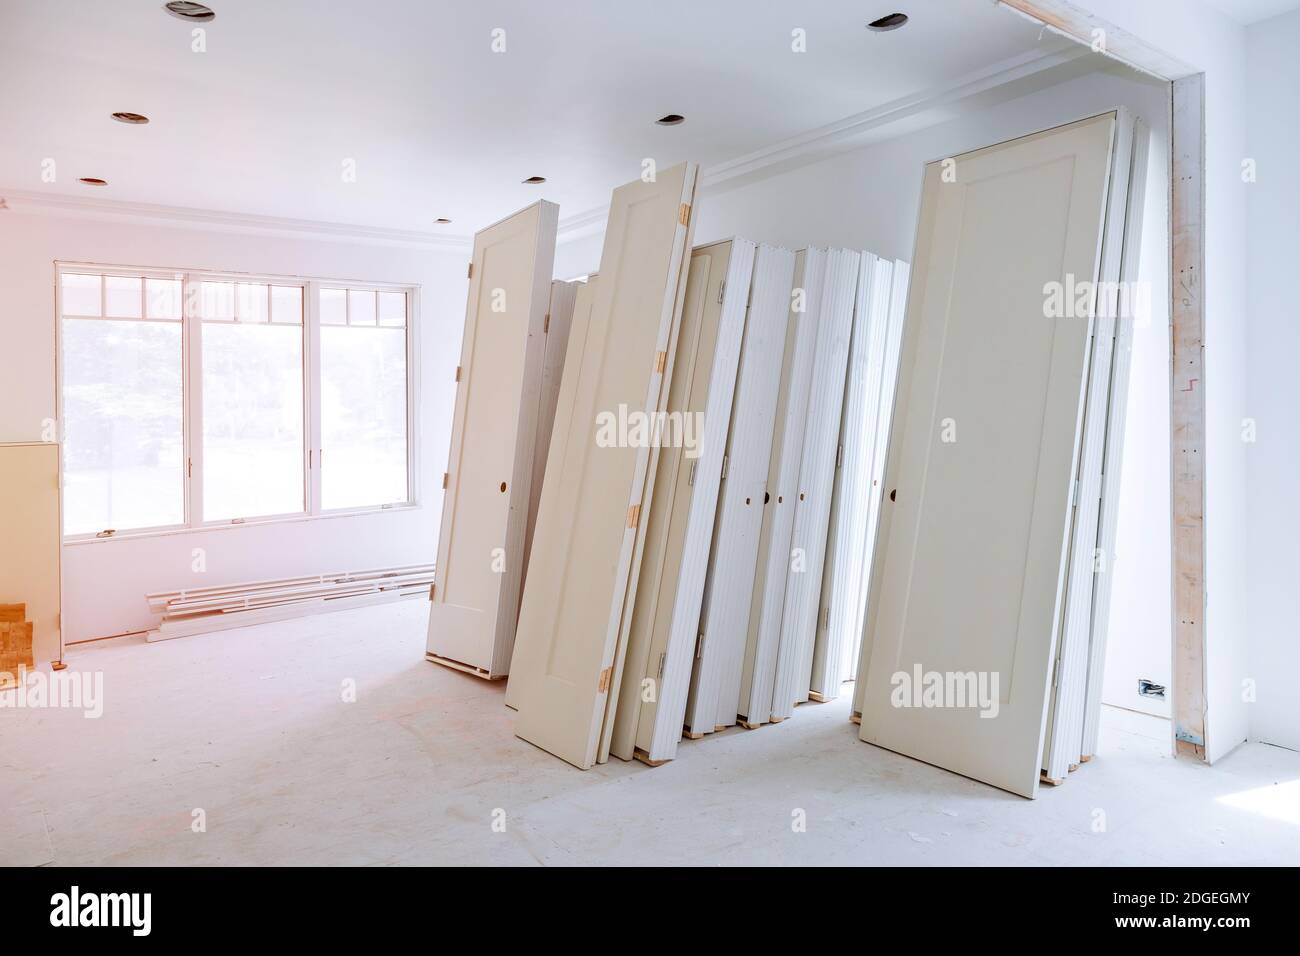 Innenkonstruktion des Wohnprojekts mit installierter Tür Stockfoto